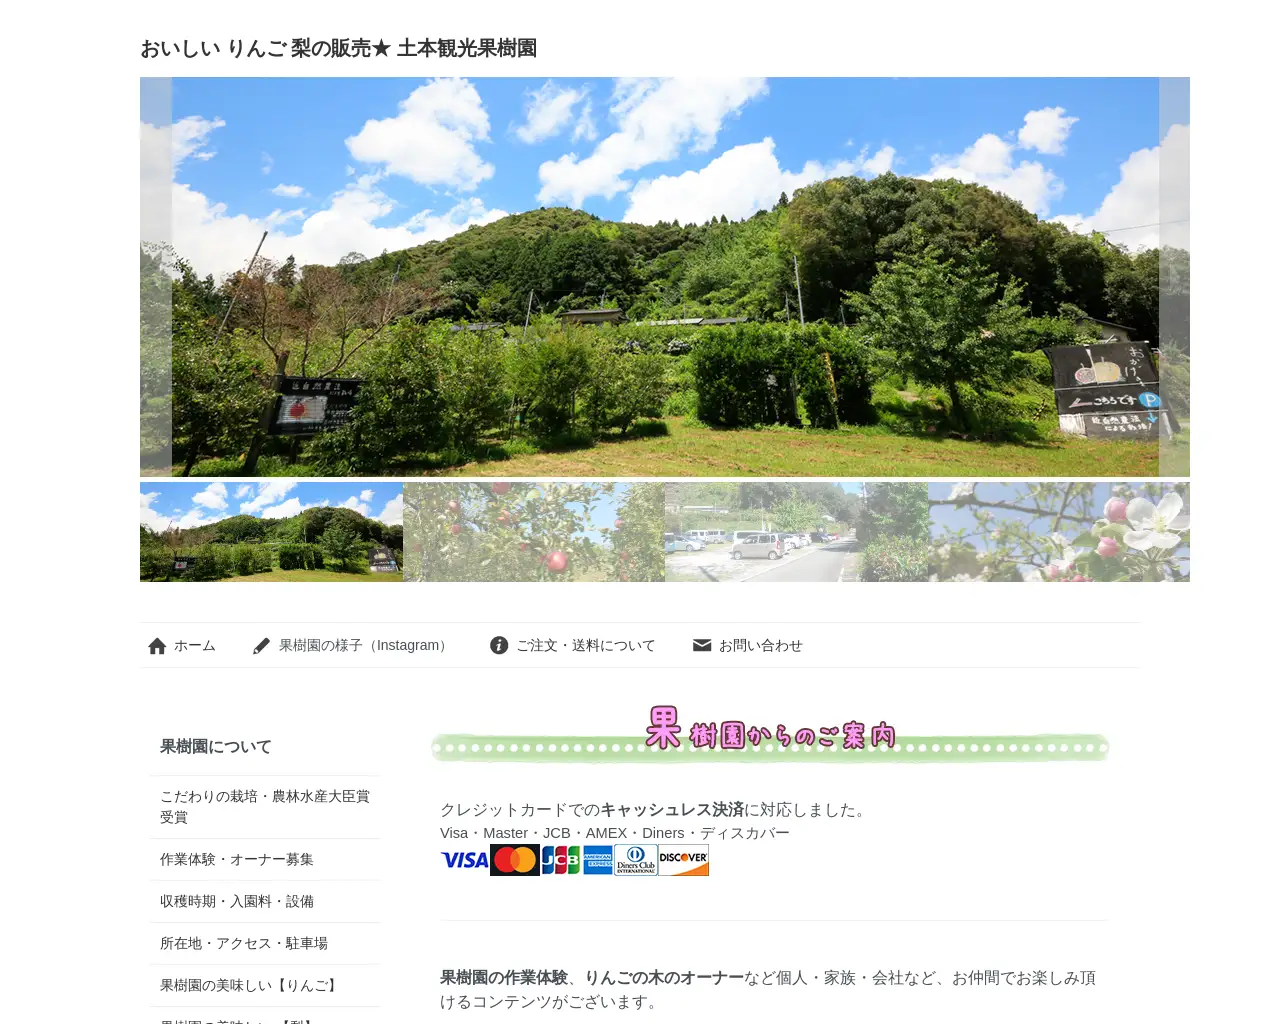 土本観光果樹園 site